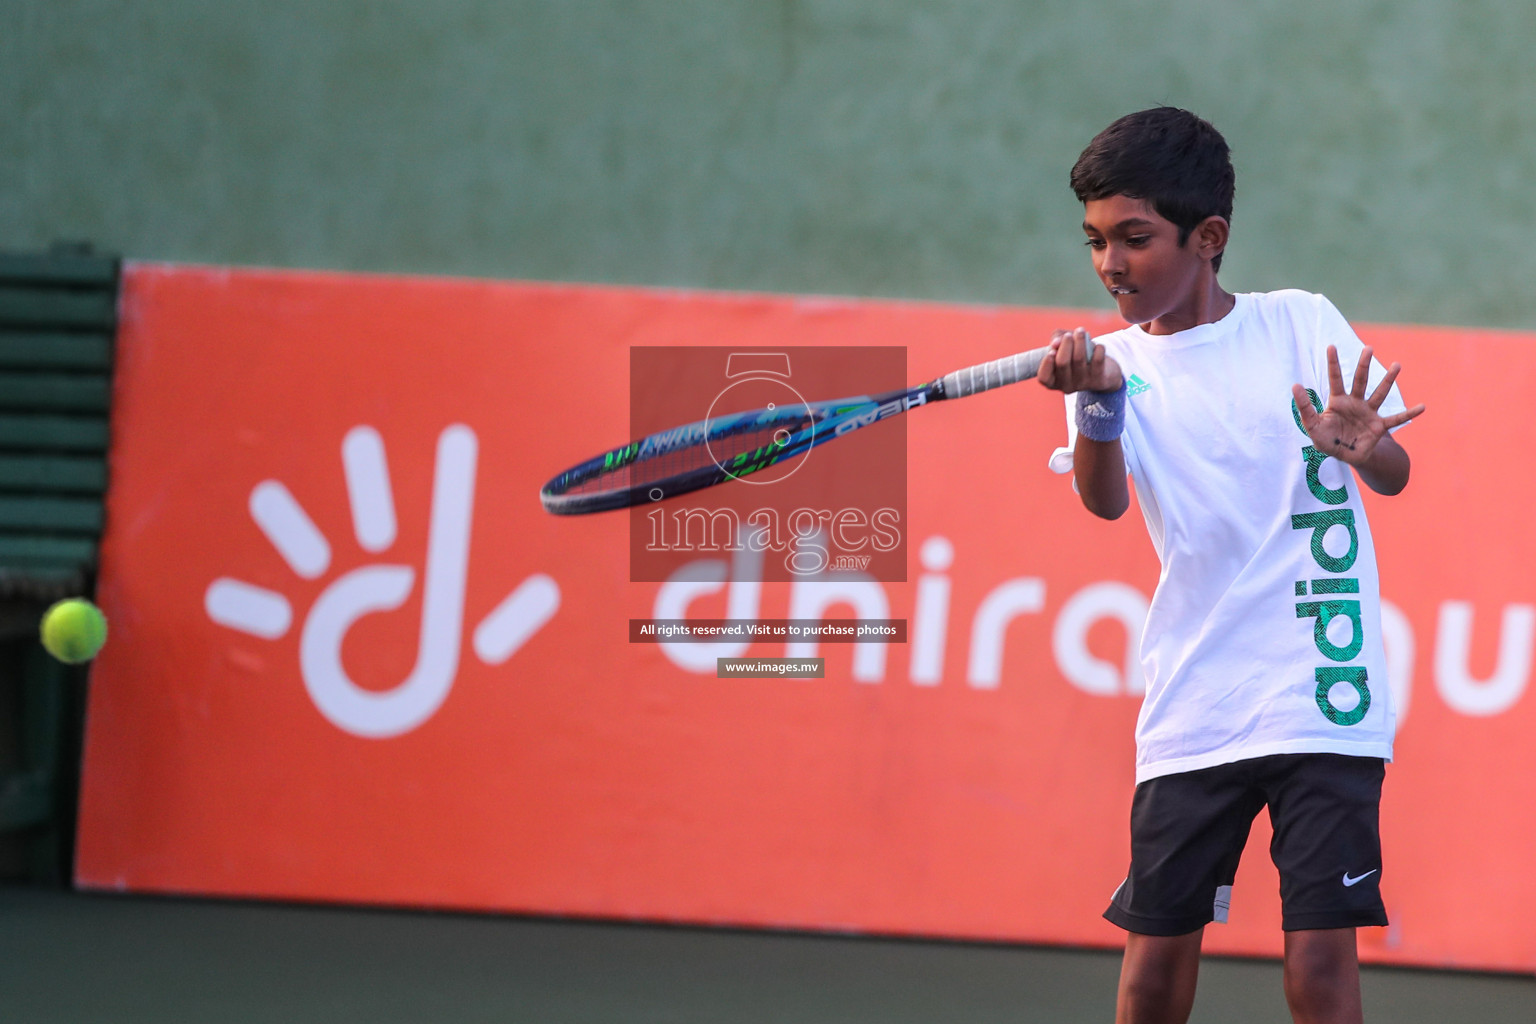 Maldives Tennis Open 2019, 8th Sep 2019, Male, Photos: Suadh Abdul Sattar/ Images.mv